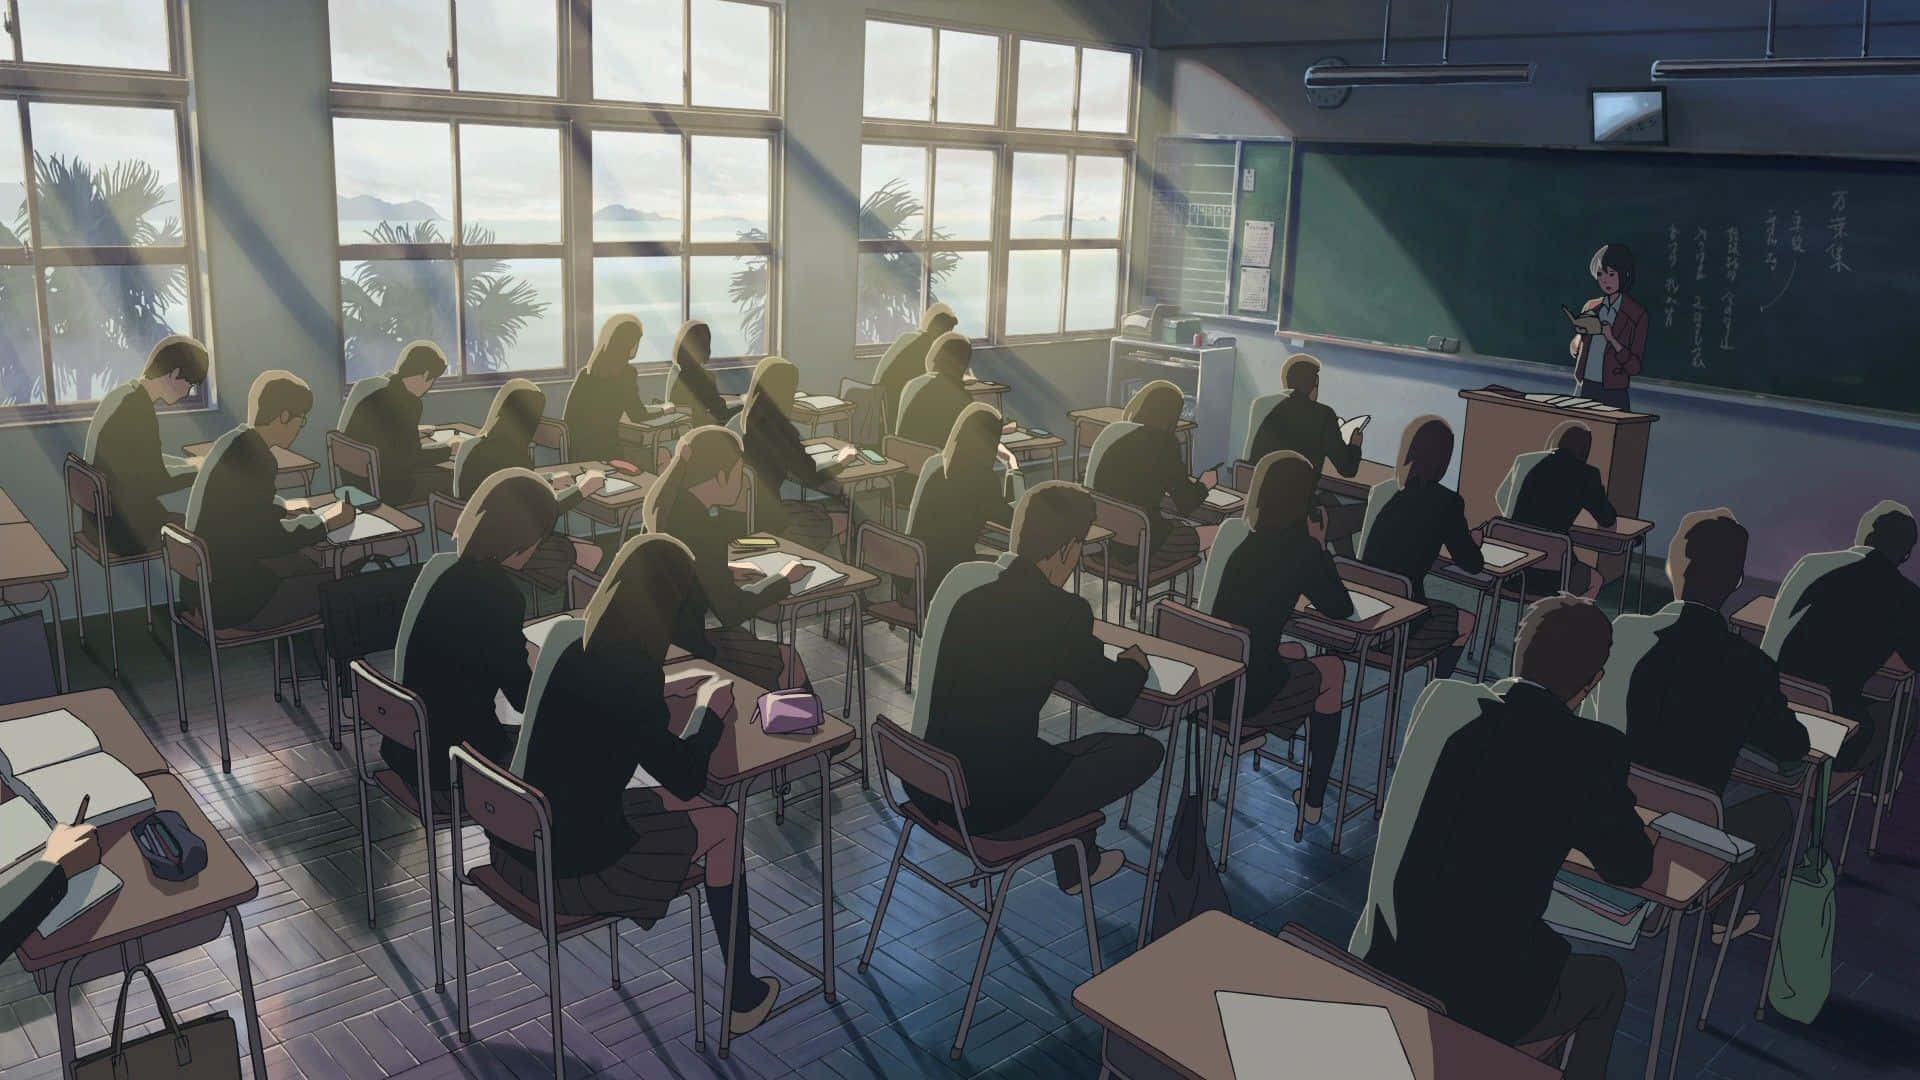 Glistudenti Si Divertono E Creano Ricordi Insieme In Un'ambientazione Di Una Classe Anime.